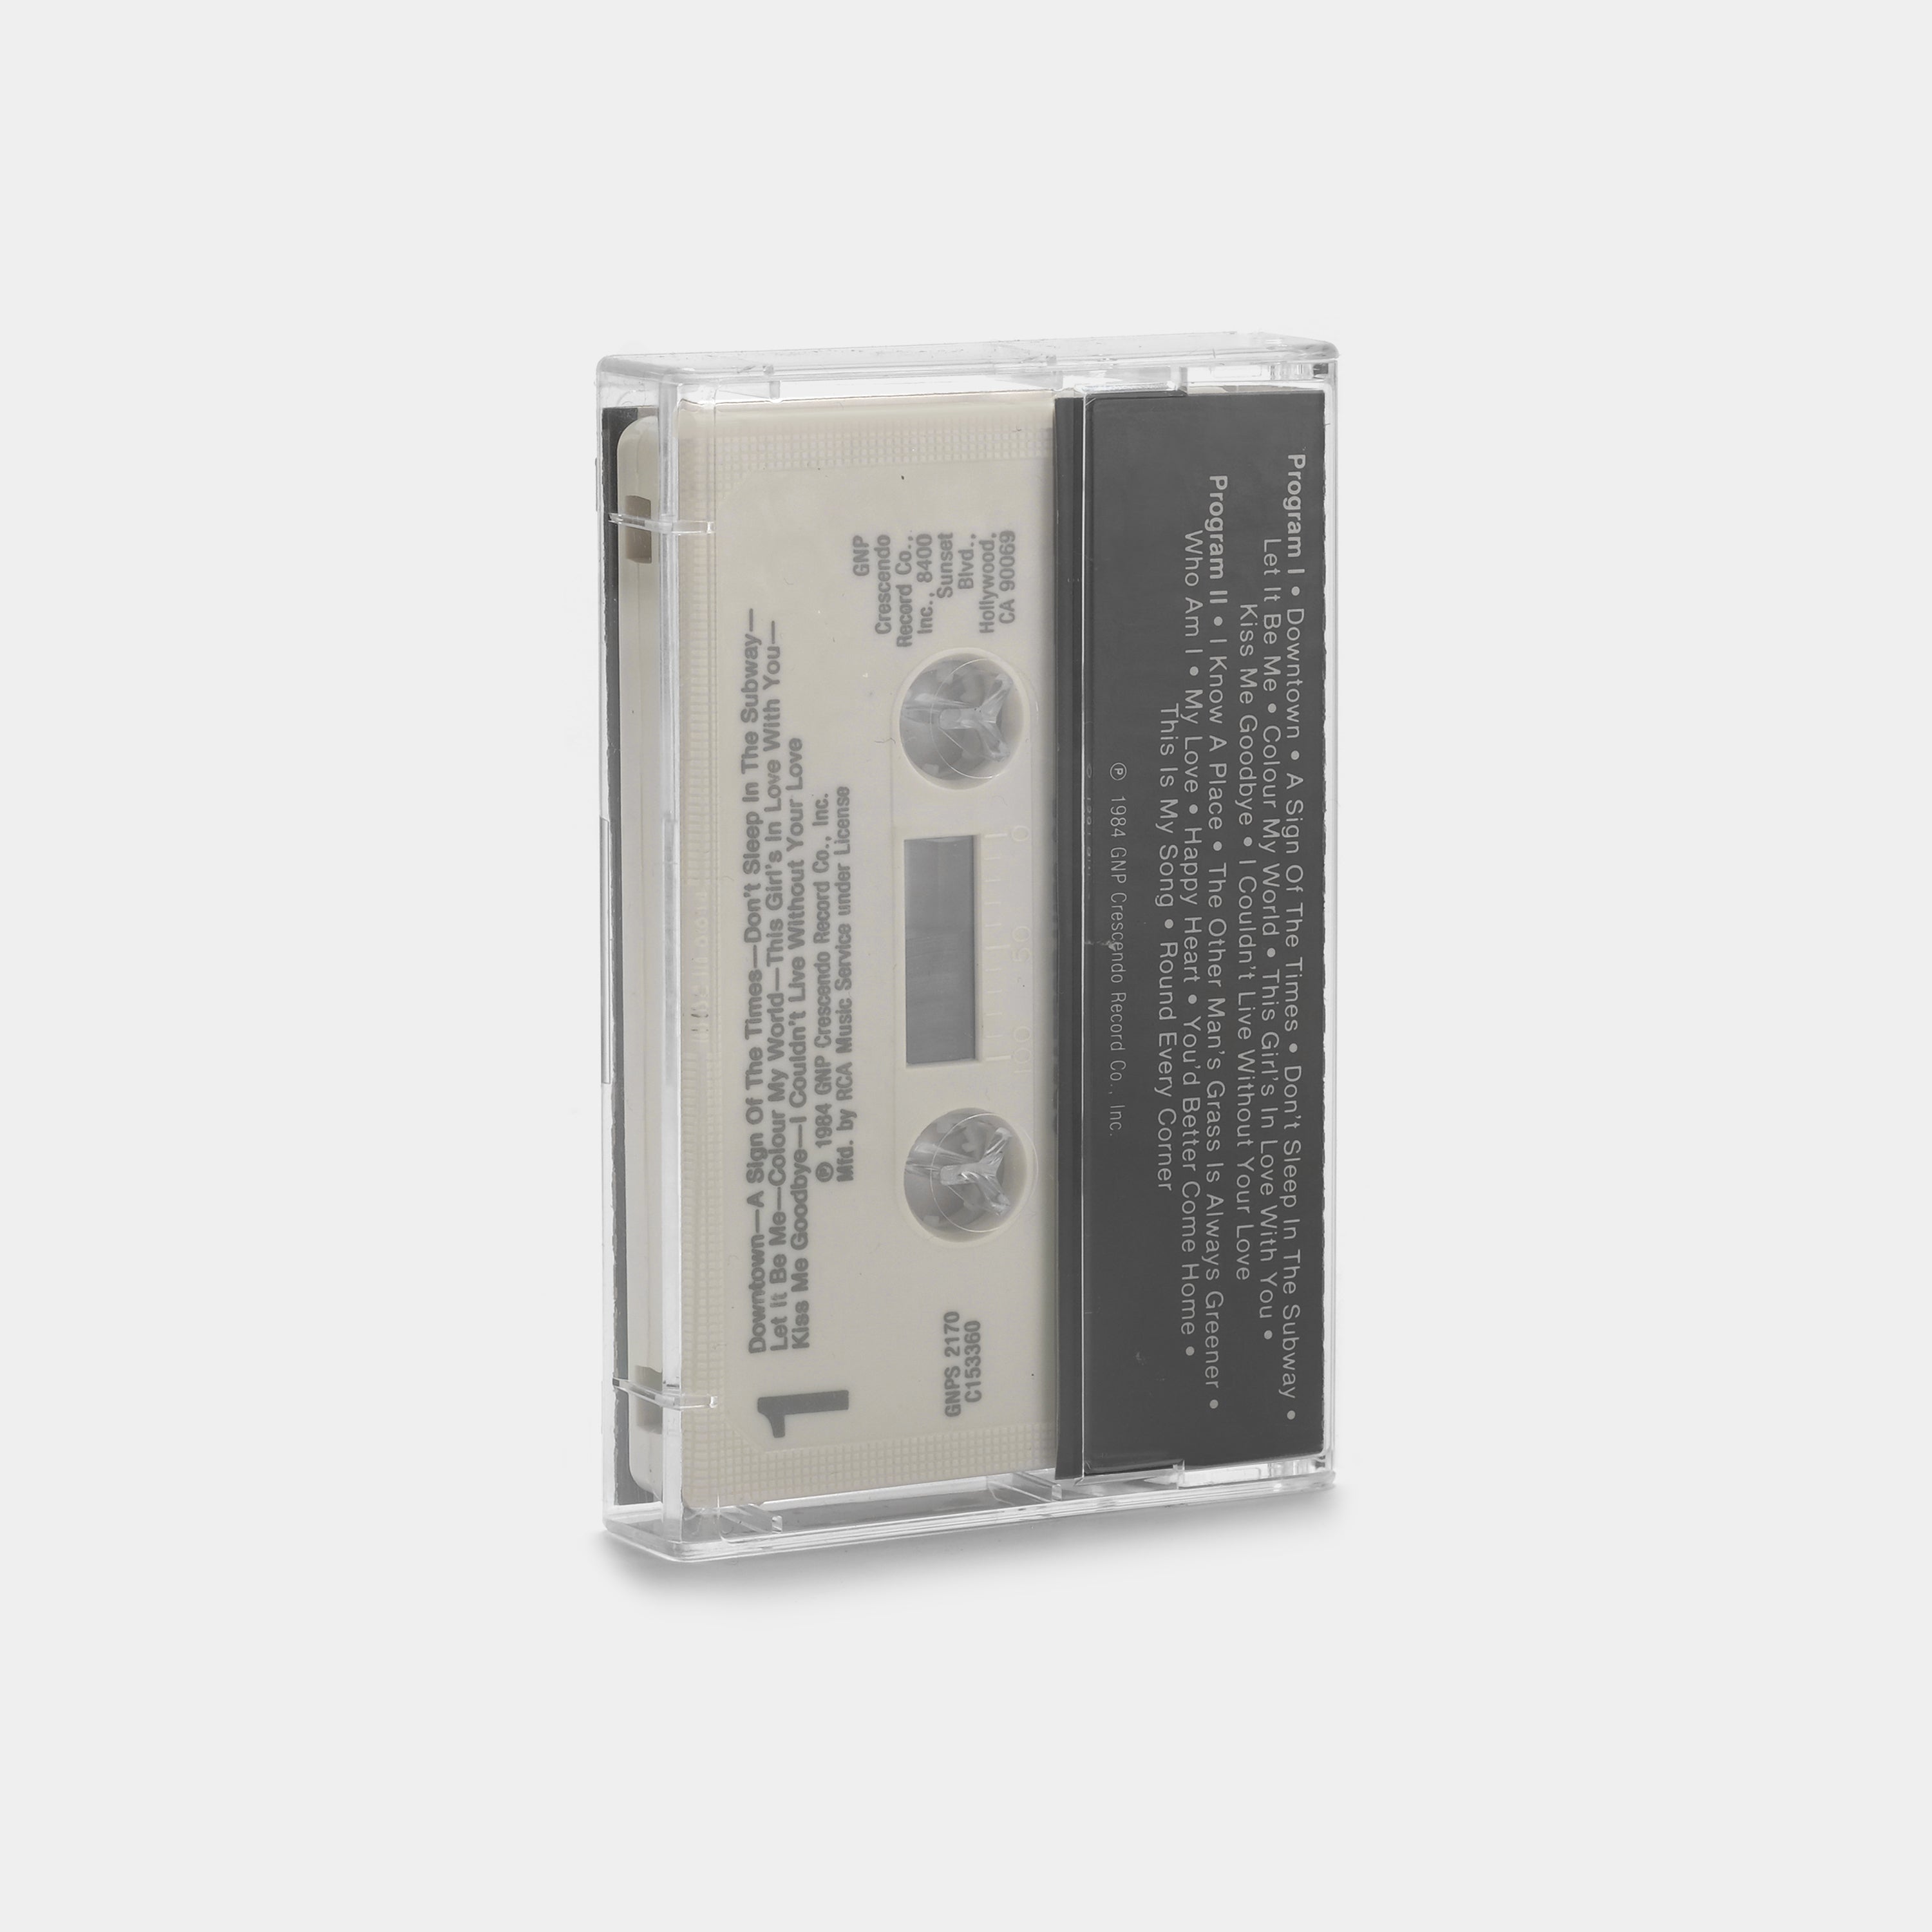 Petula Clark - Greatest Hits of Petula Clark Cassette Tape